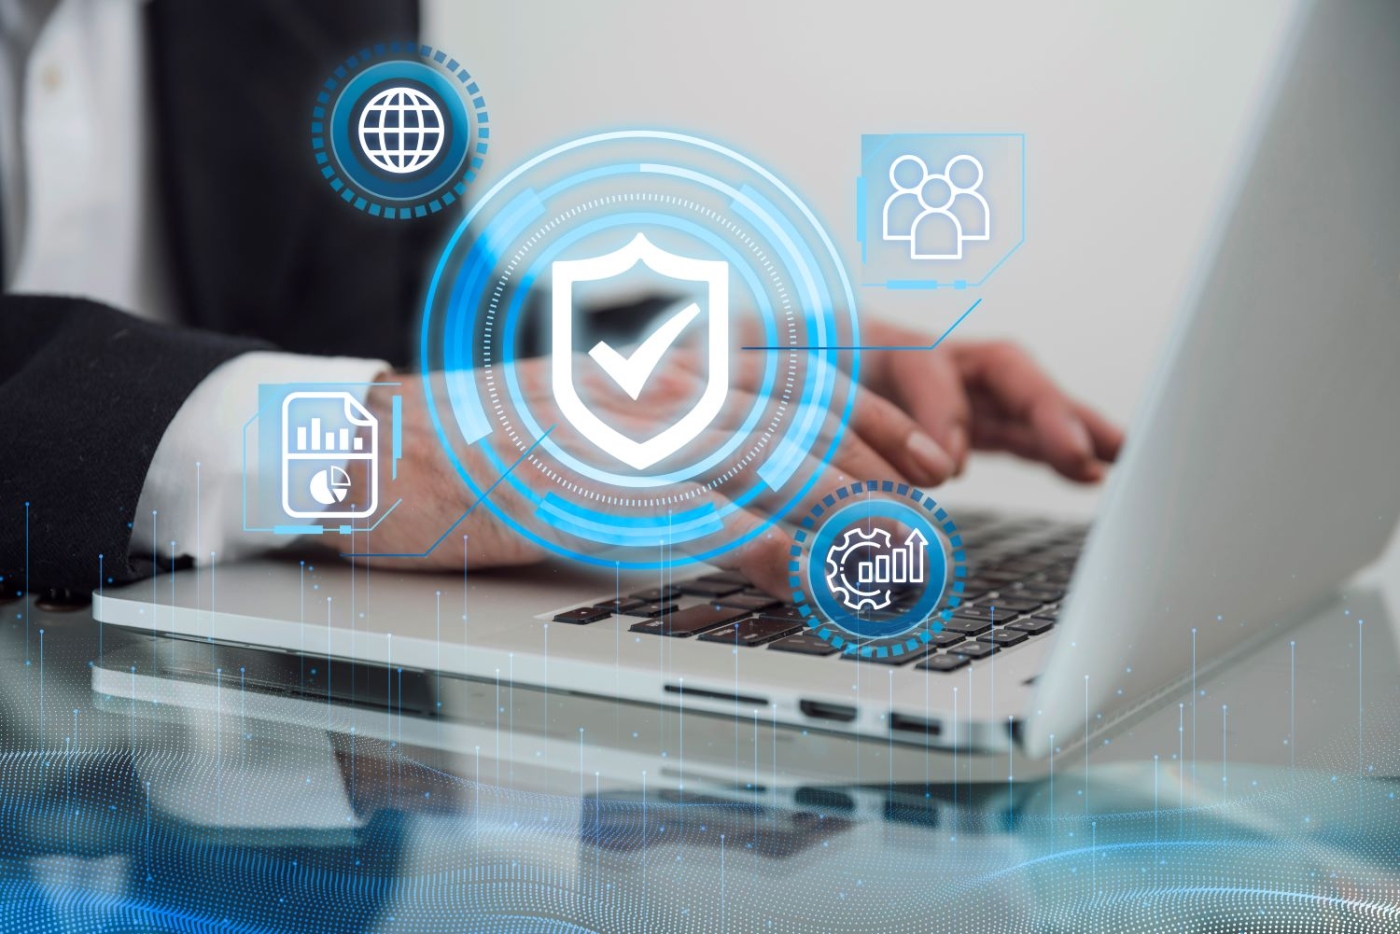 Webinar Cibersegurança: Melhores práticas na Administração Pública | 17 abril às 11h